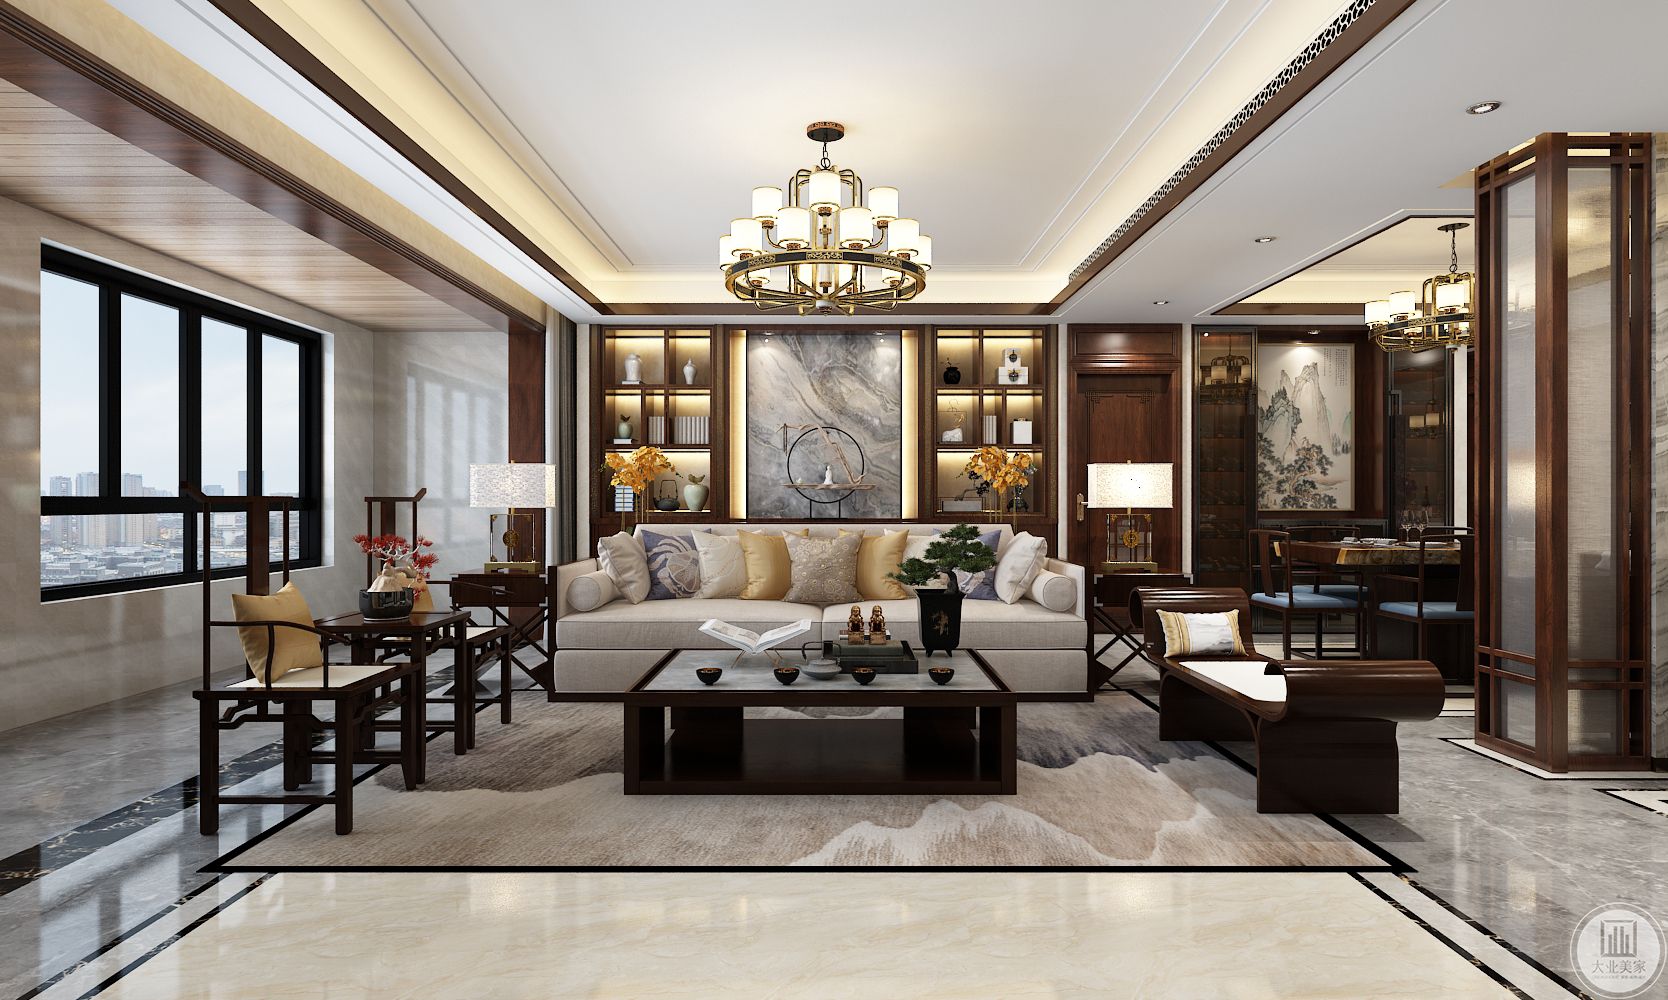 沙发背景墙采用灰色风格的水墨画，沙发以白色为主搭配木质家具，客厅中间摆放黑色茶几。